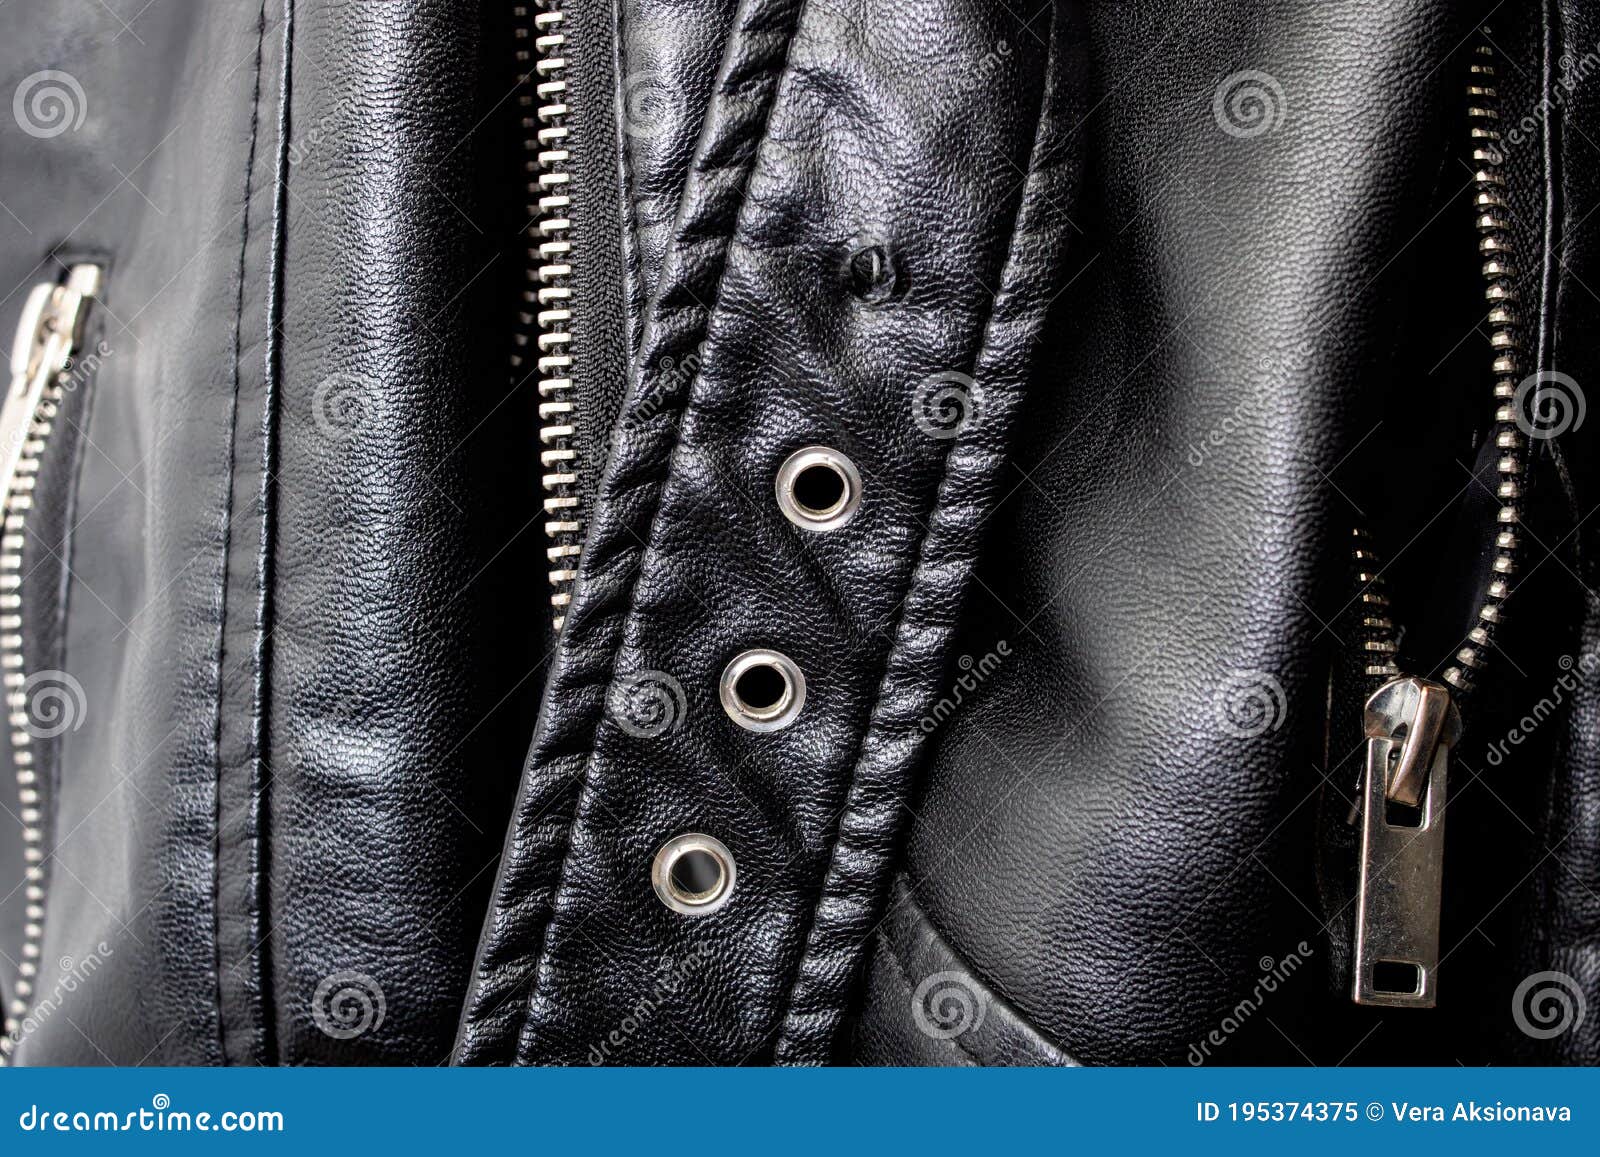 Close Up of Leather Belt on Leather Jacket Stock Image - Image of ...